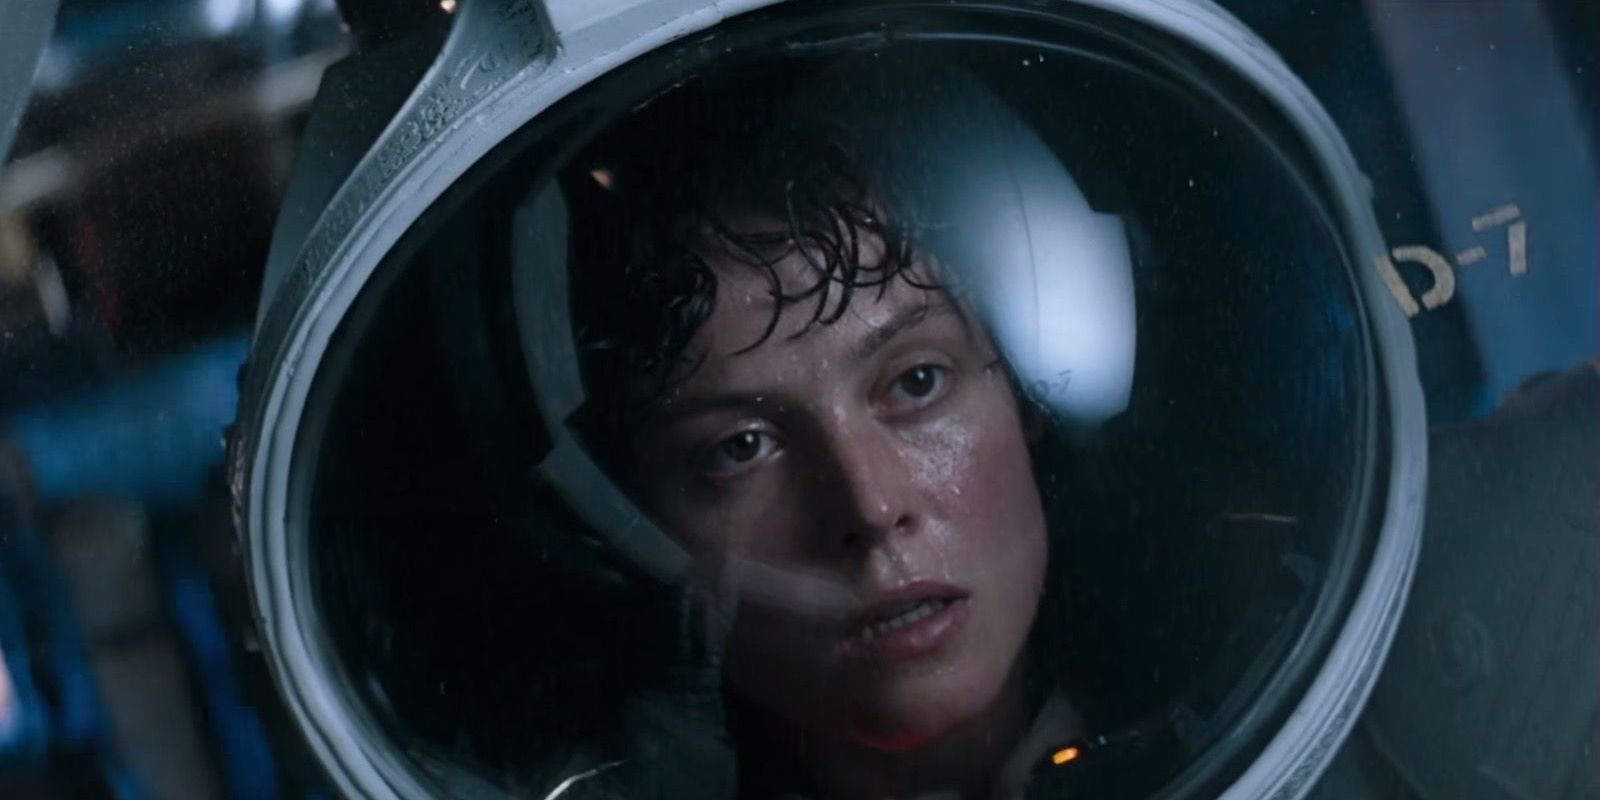 Sigourney Weaver as Ripley in a space suit in Alien